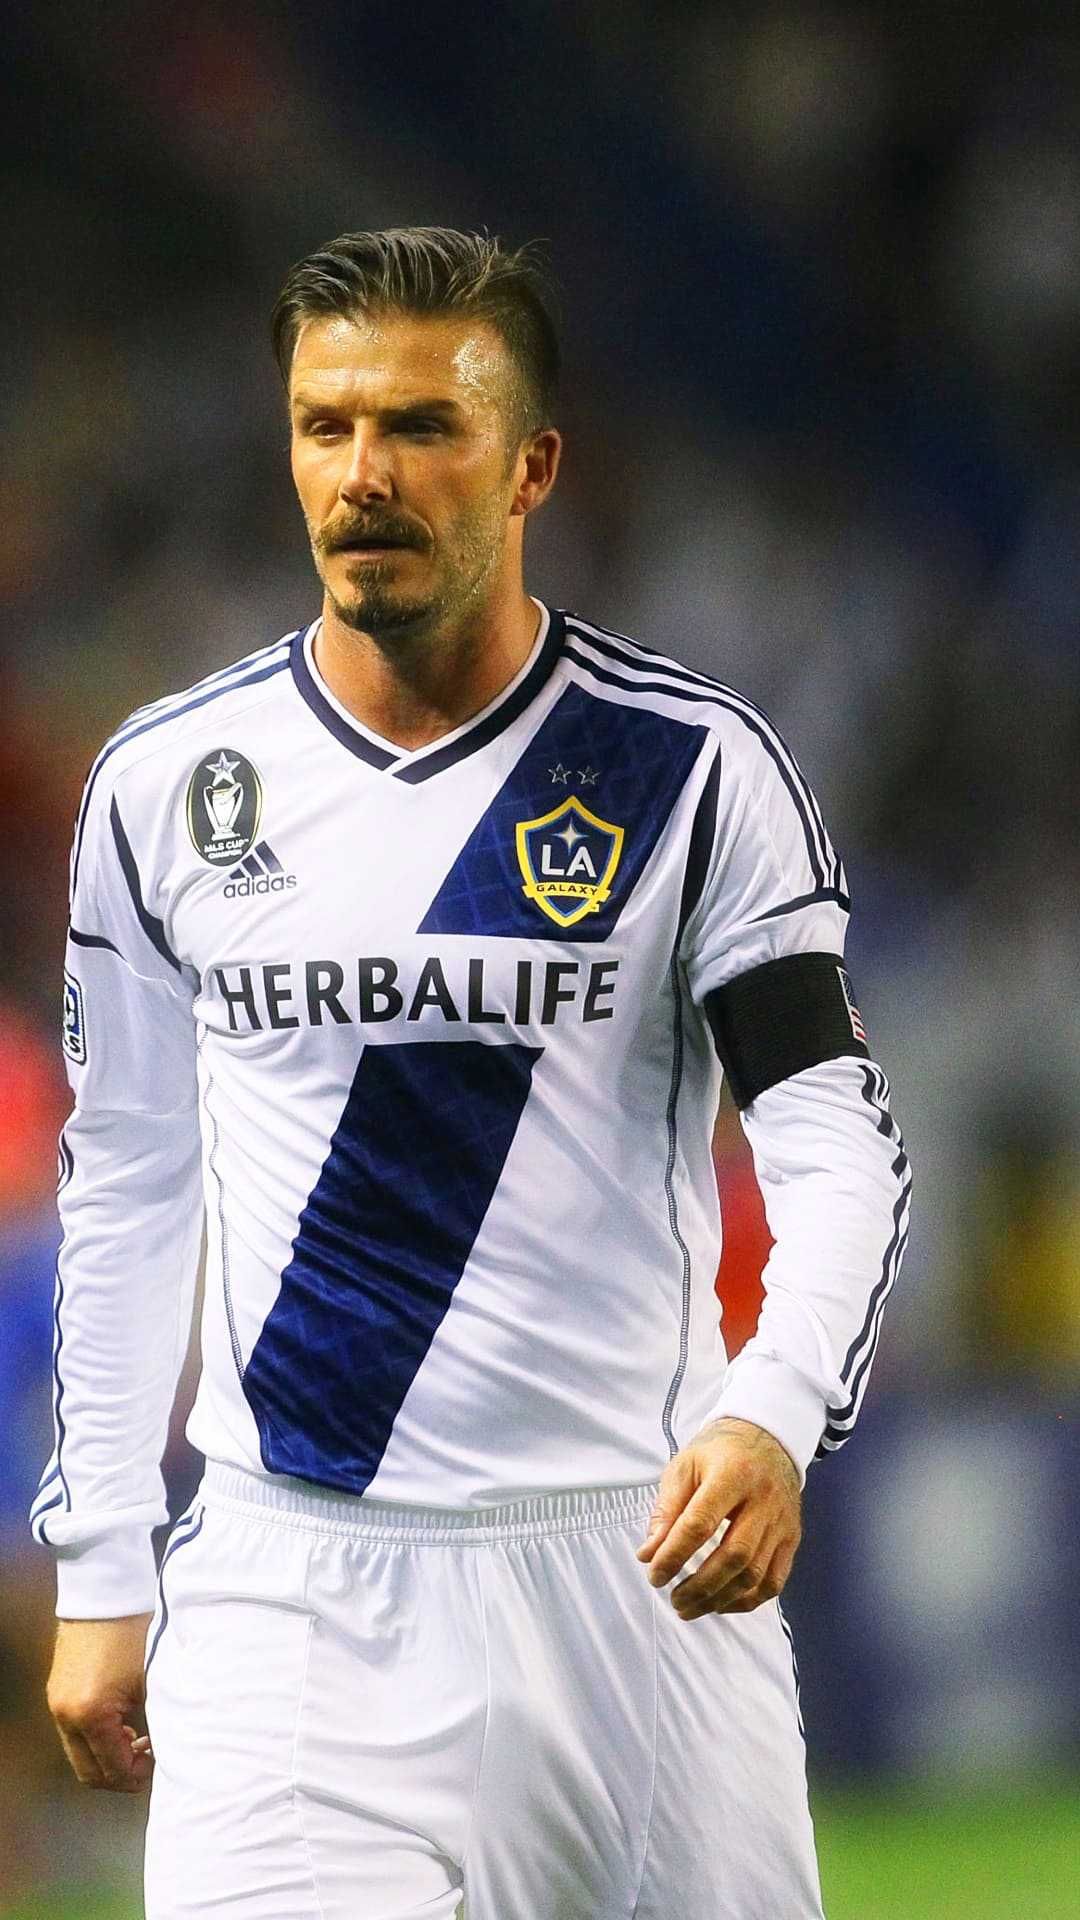 David Beckham con bigote en Los Angeles Galaxy FC